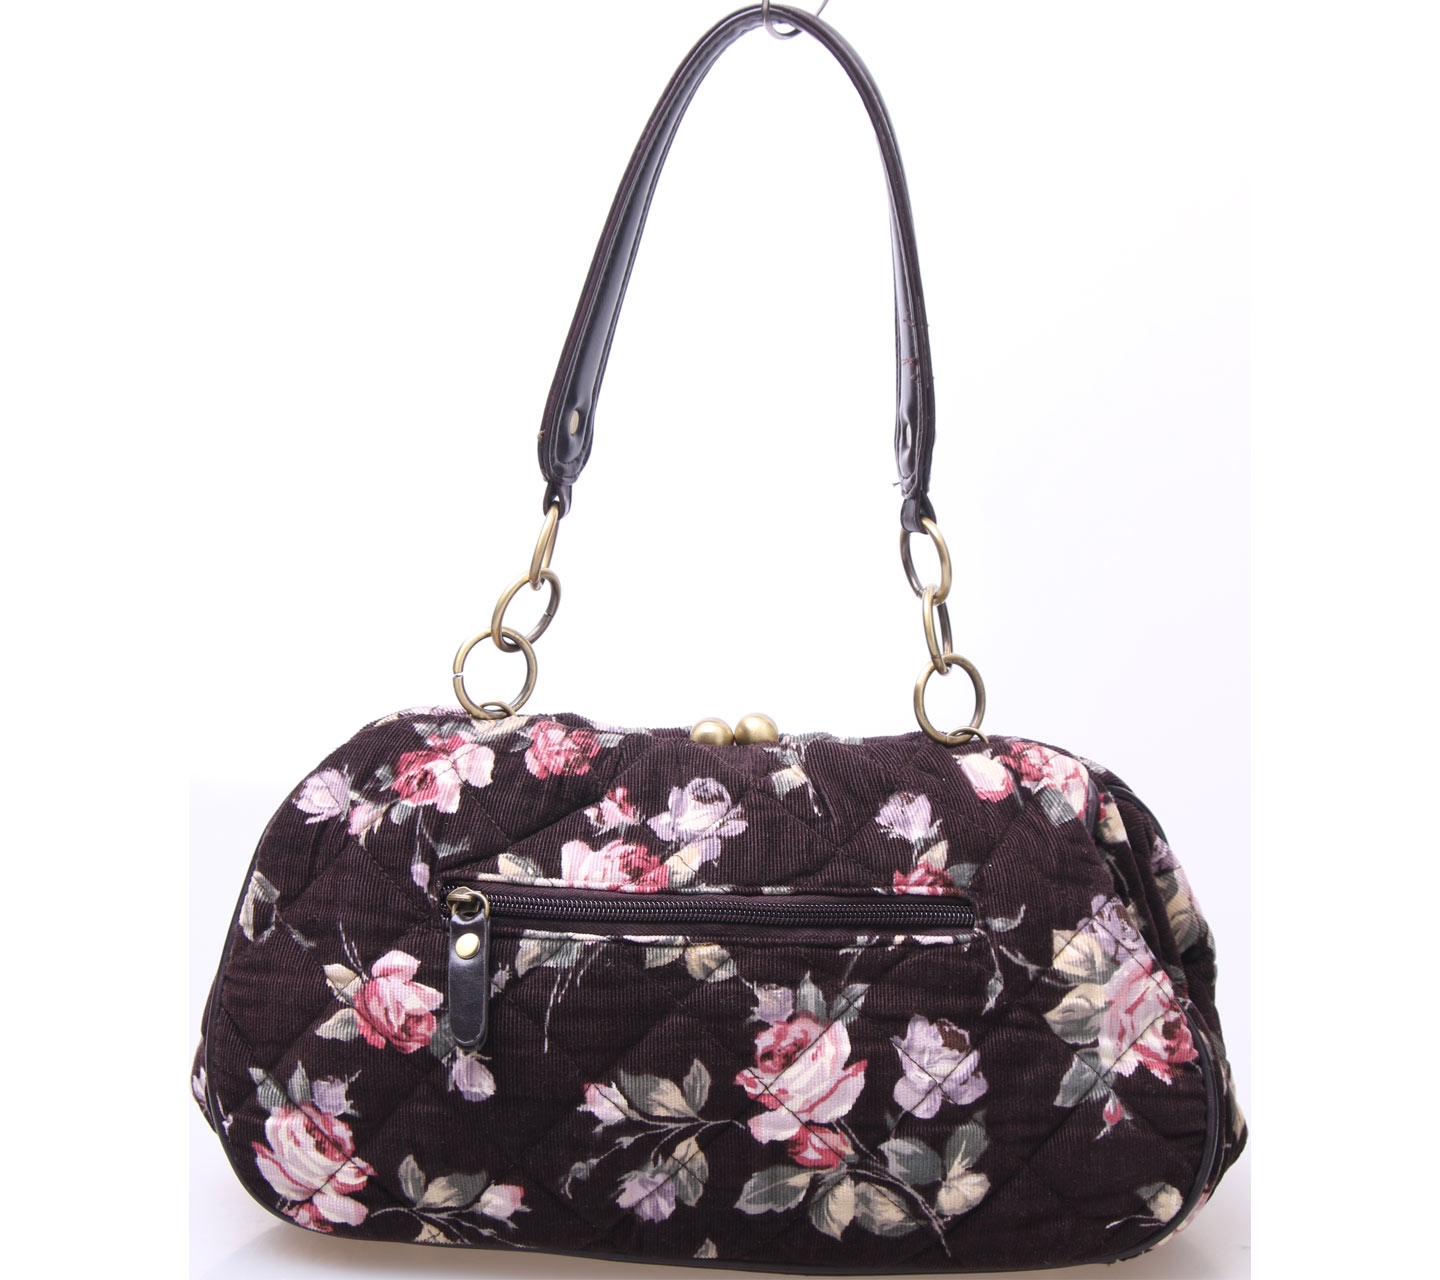 Axes Femme Dark Brown Floral Shoulder Bag